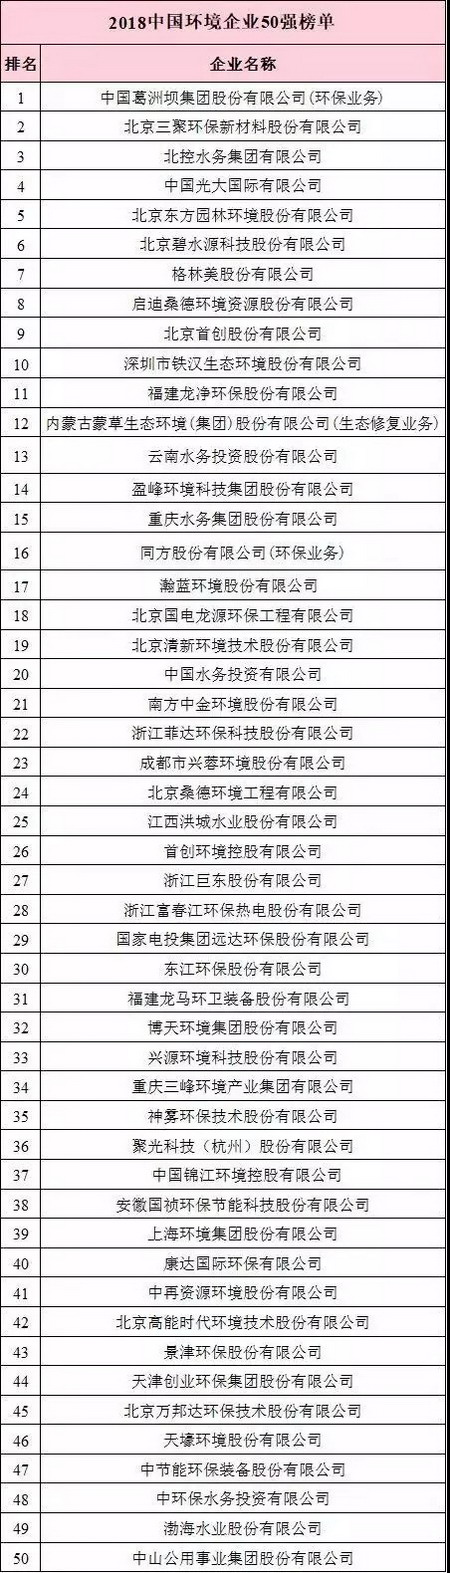 全国工商联环境商会发布2018中国环境企业50强新榜单